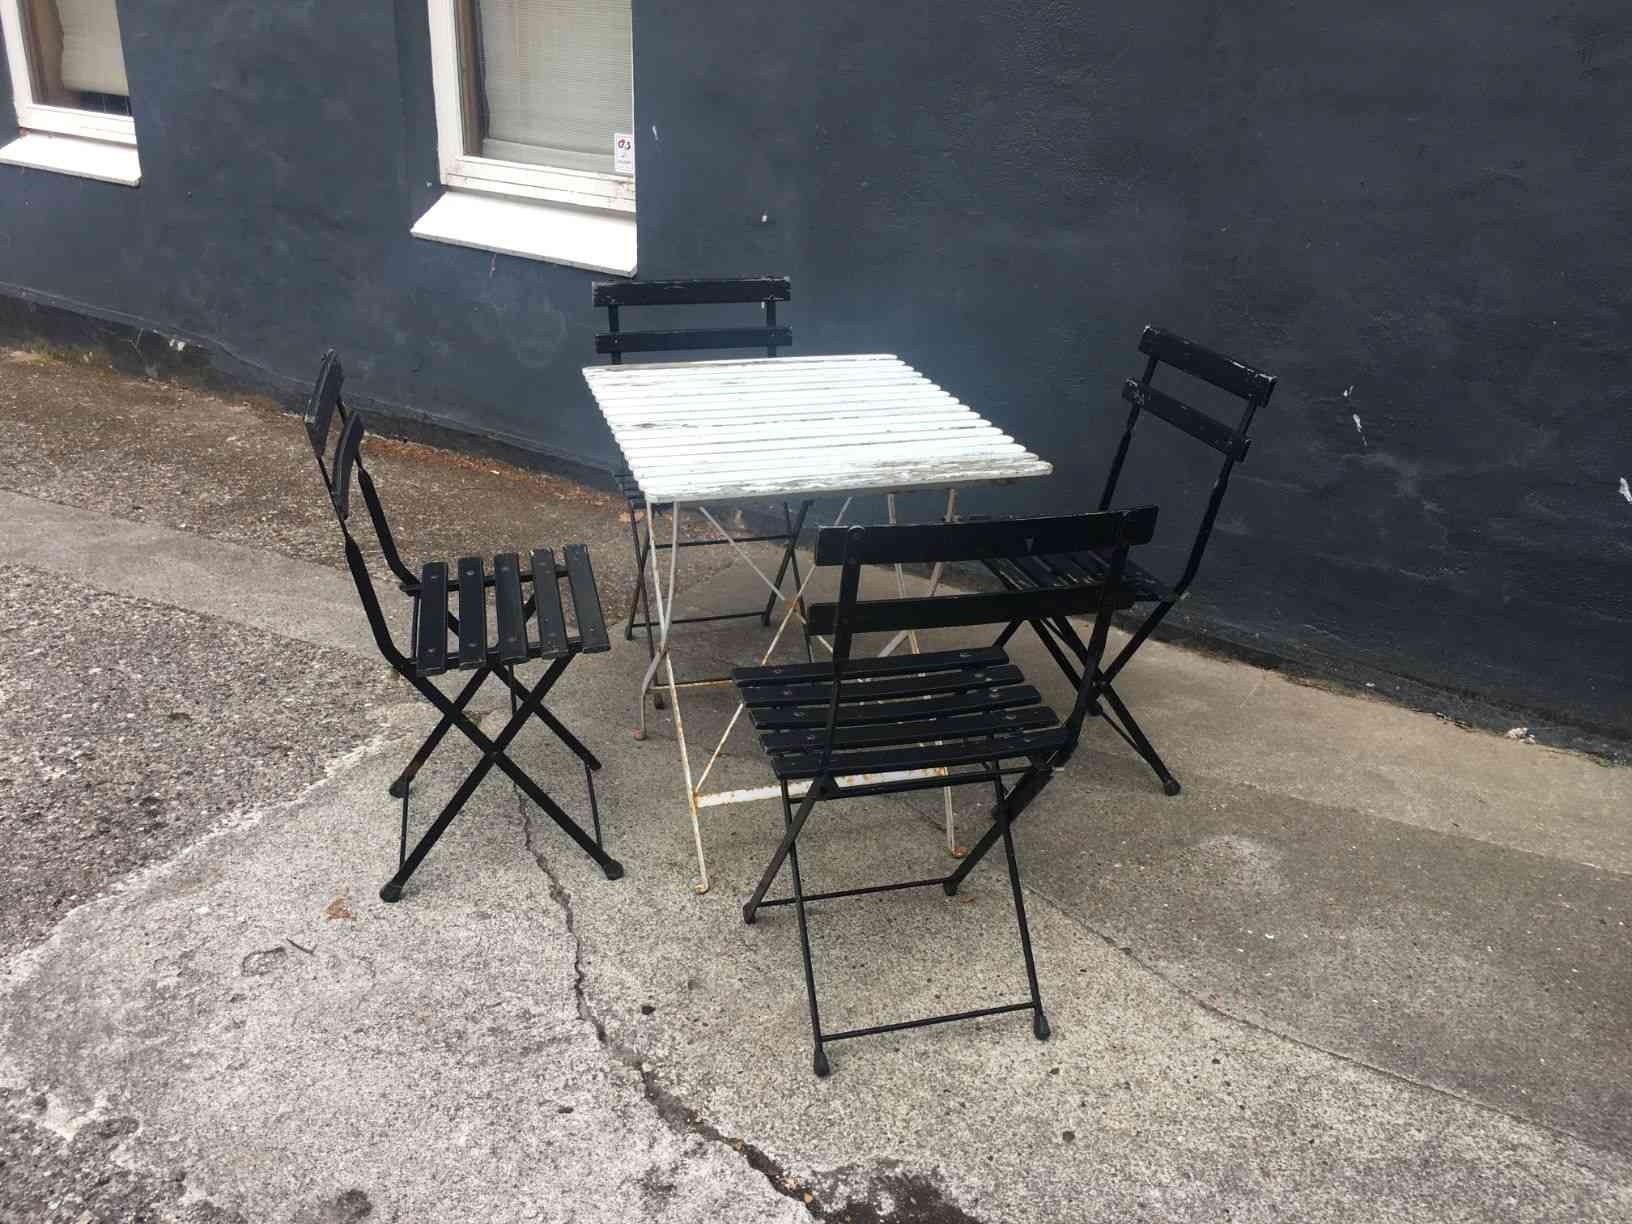 Vintage cafébord med 4 stole i flot rustik og patineret stand. Alt kan klappes sammen for at stille væk om efteråret. Stel af bemalet metal påsat bemalet træ. Pris: 1.000,- Kr.